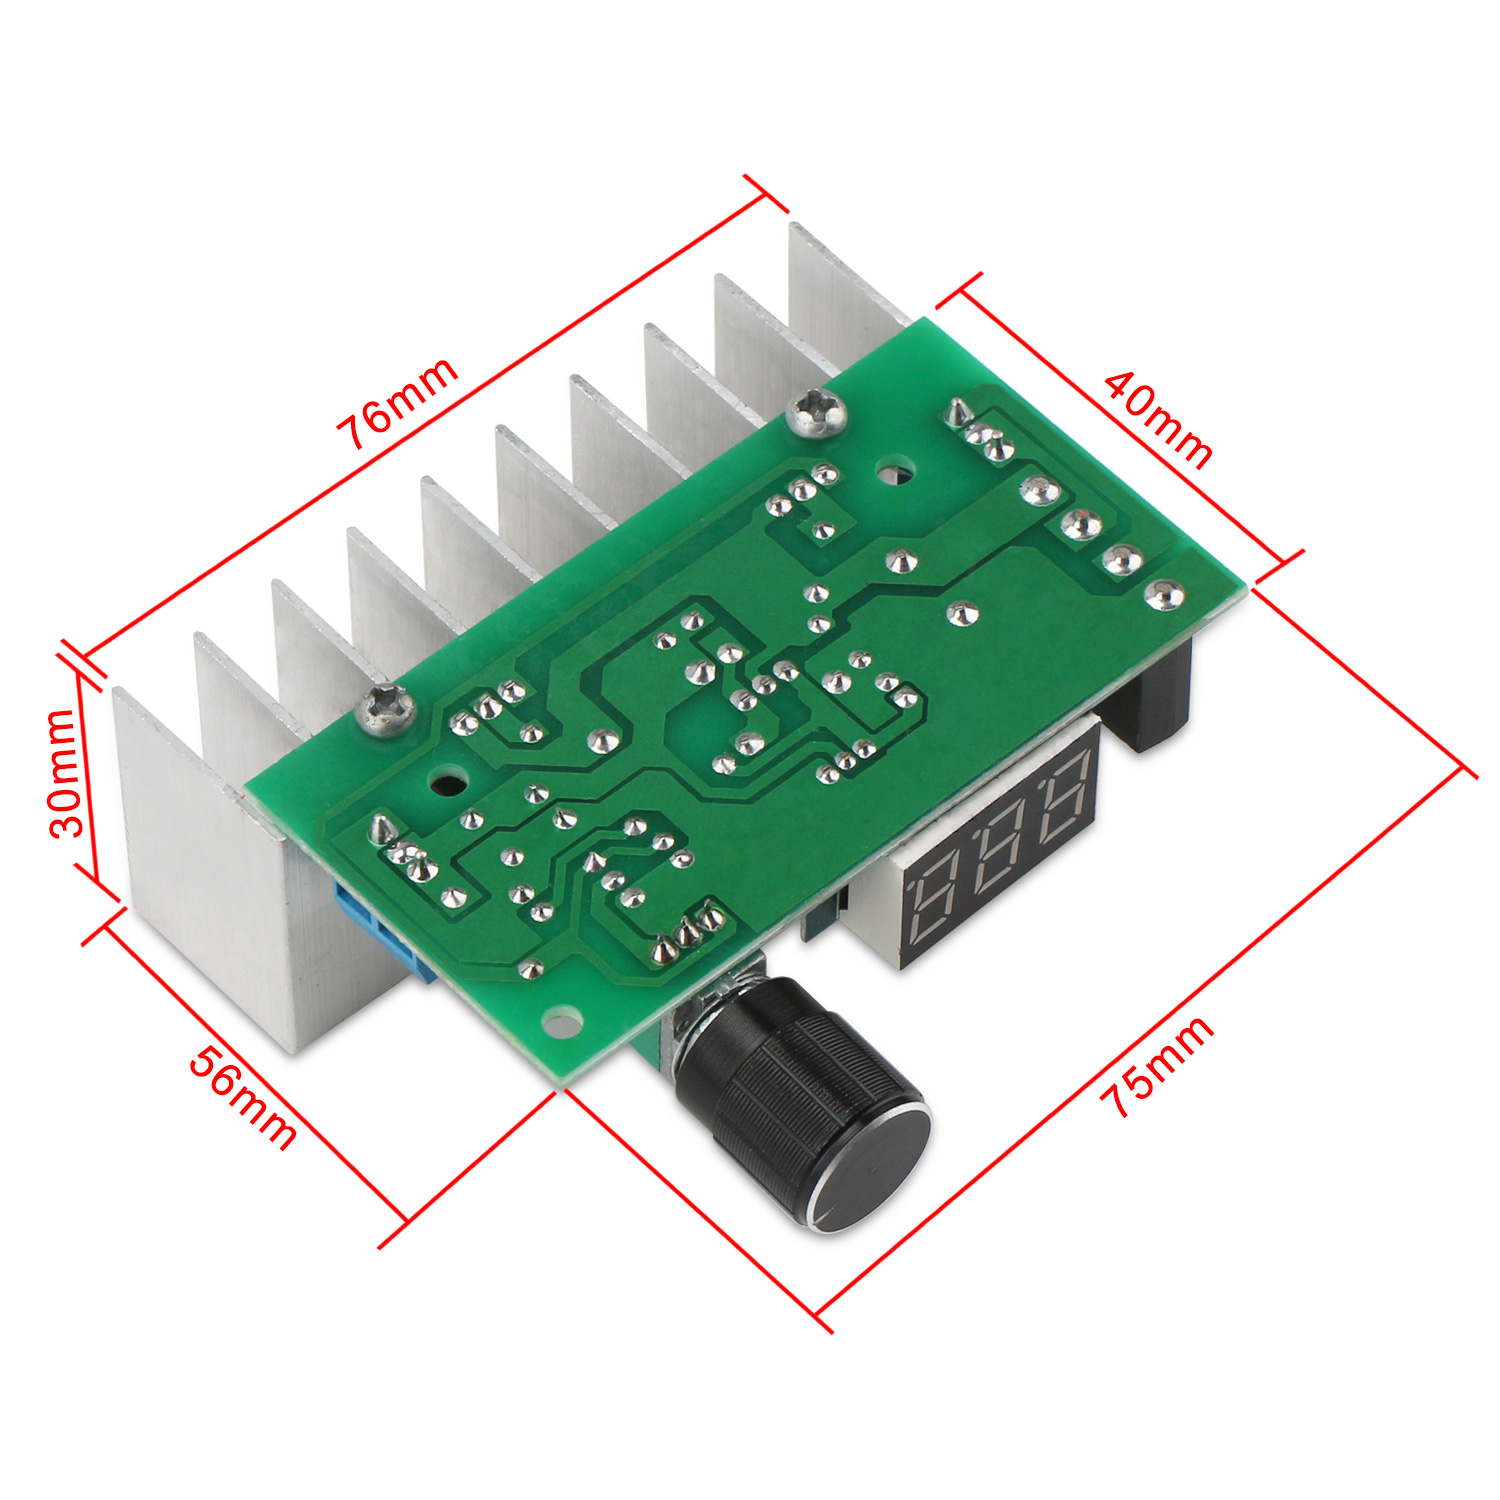 LM317 Digital Display Adjustable Power Supply  DC 1.25~32V Voltage Regulator